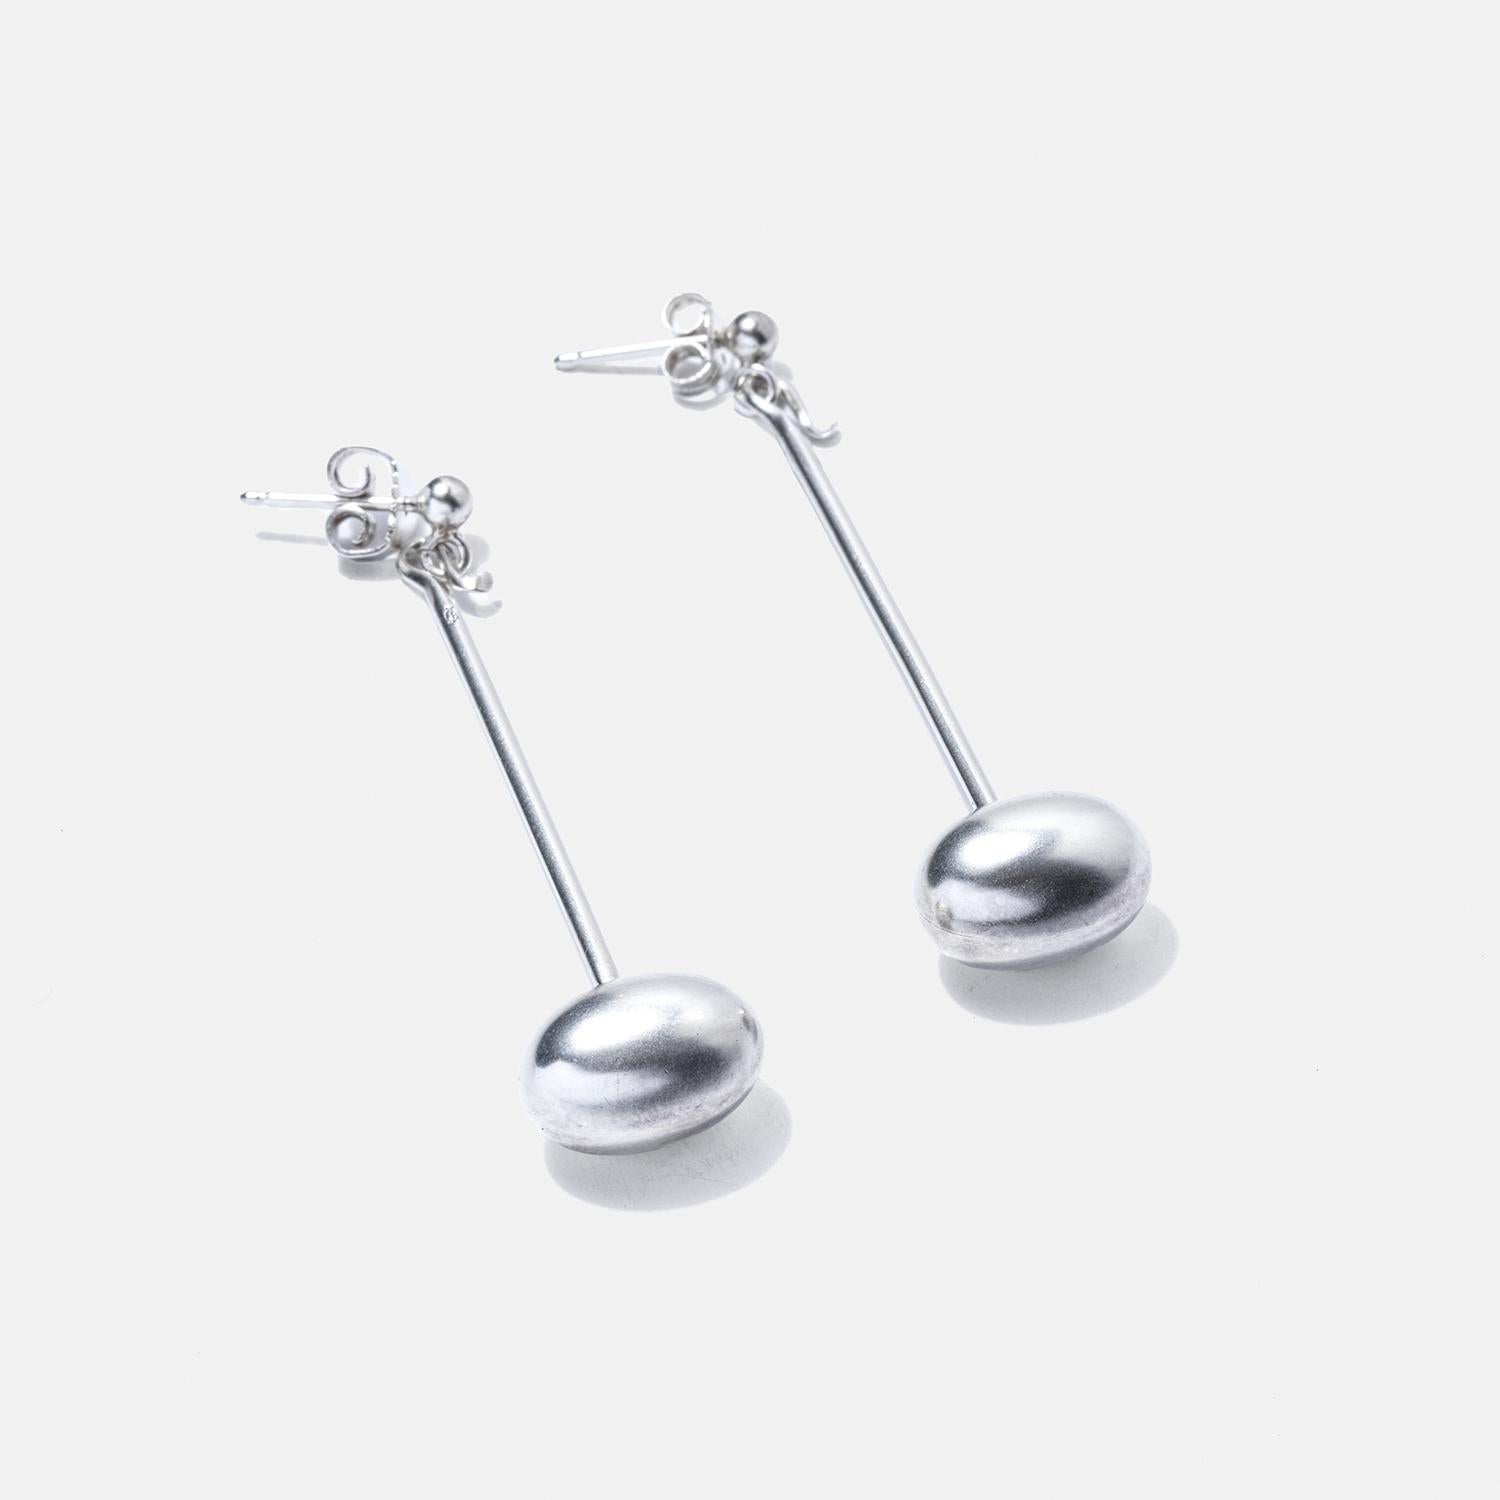 Silver Dangling Earrings by Vivianna Torun Bülow-Hübe In Good Condition For Sale In Stockholm, SE